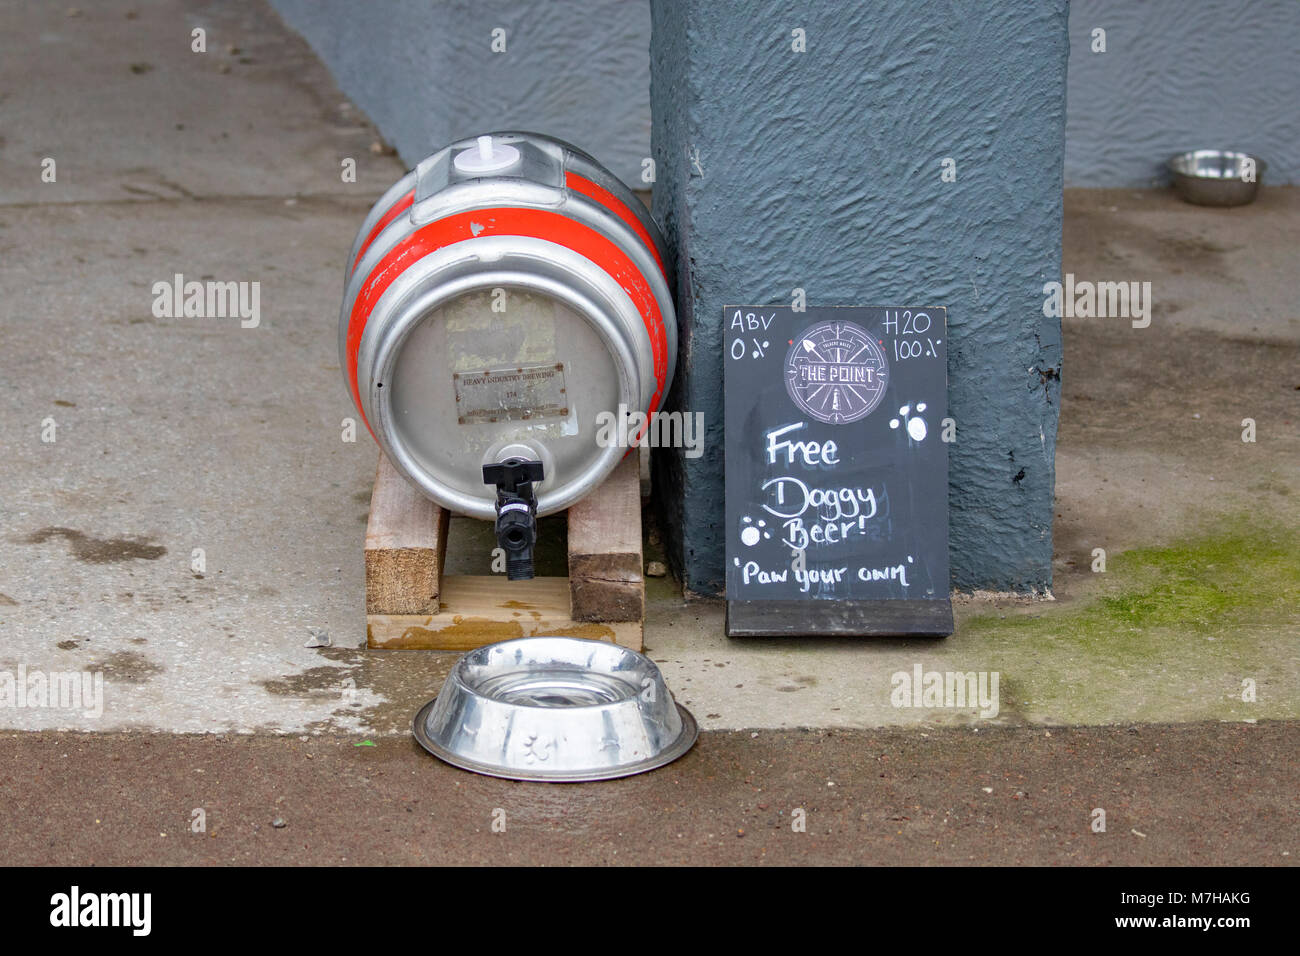 Un barril de cerveza barril convierten a verter agua en un bebedero de perro fuera de un pub con las palabras "doggy cerveza gratis! Y 'pata' en su propio Talacre Foto de stock